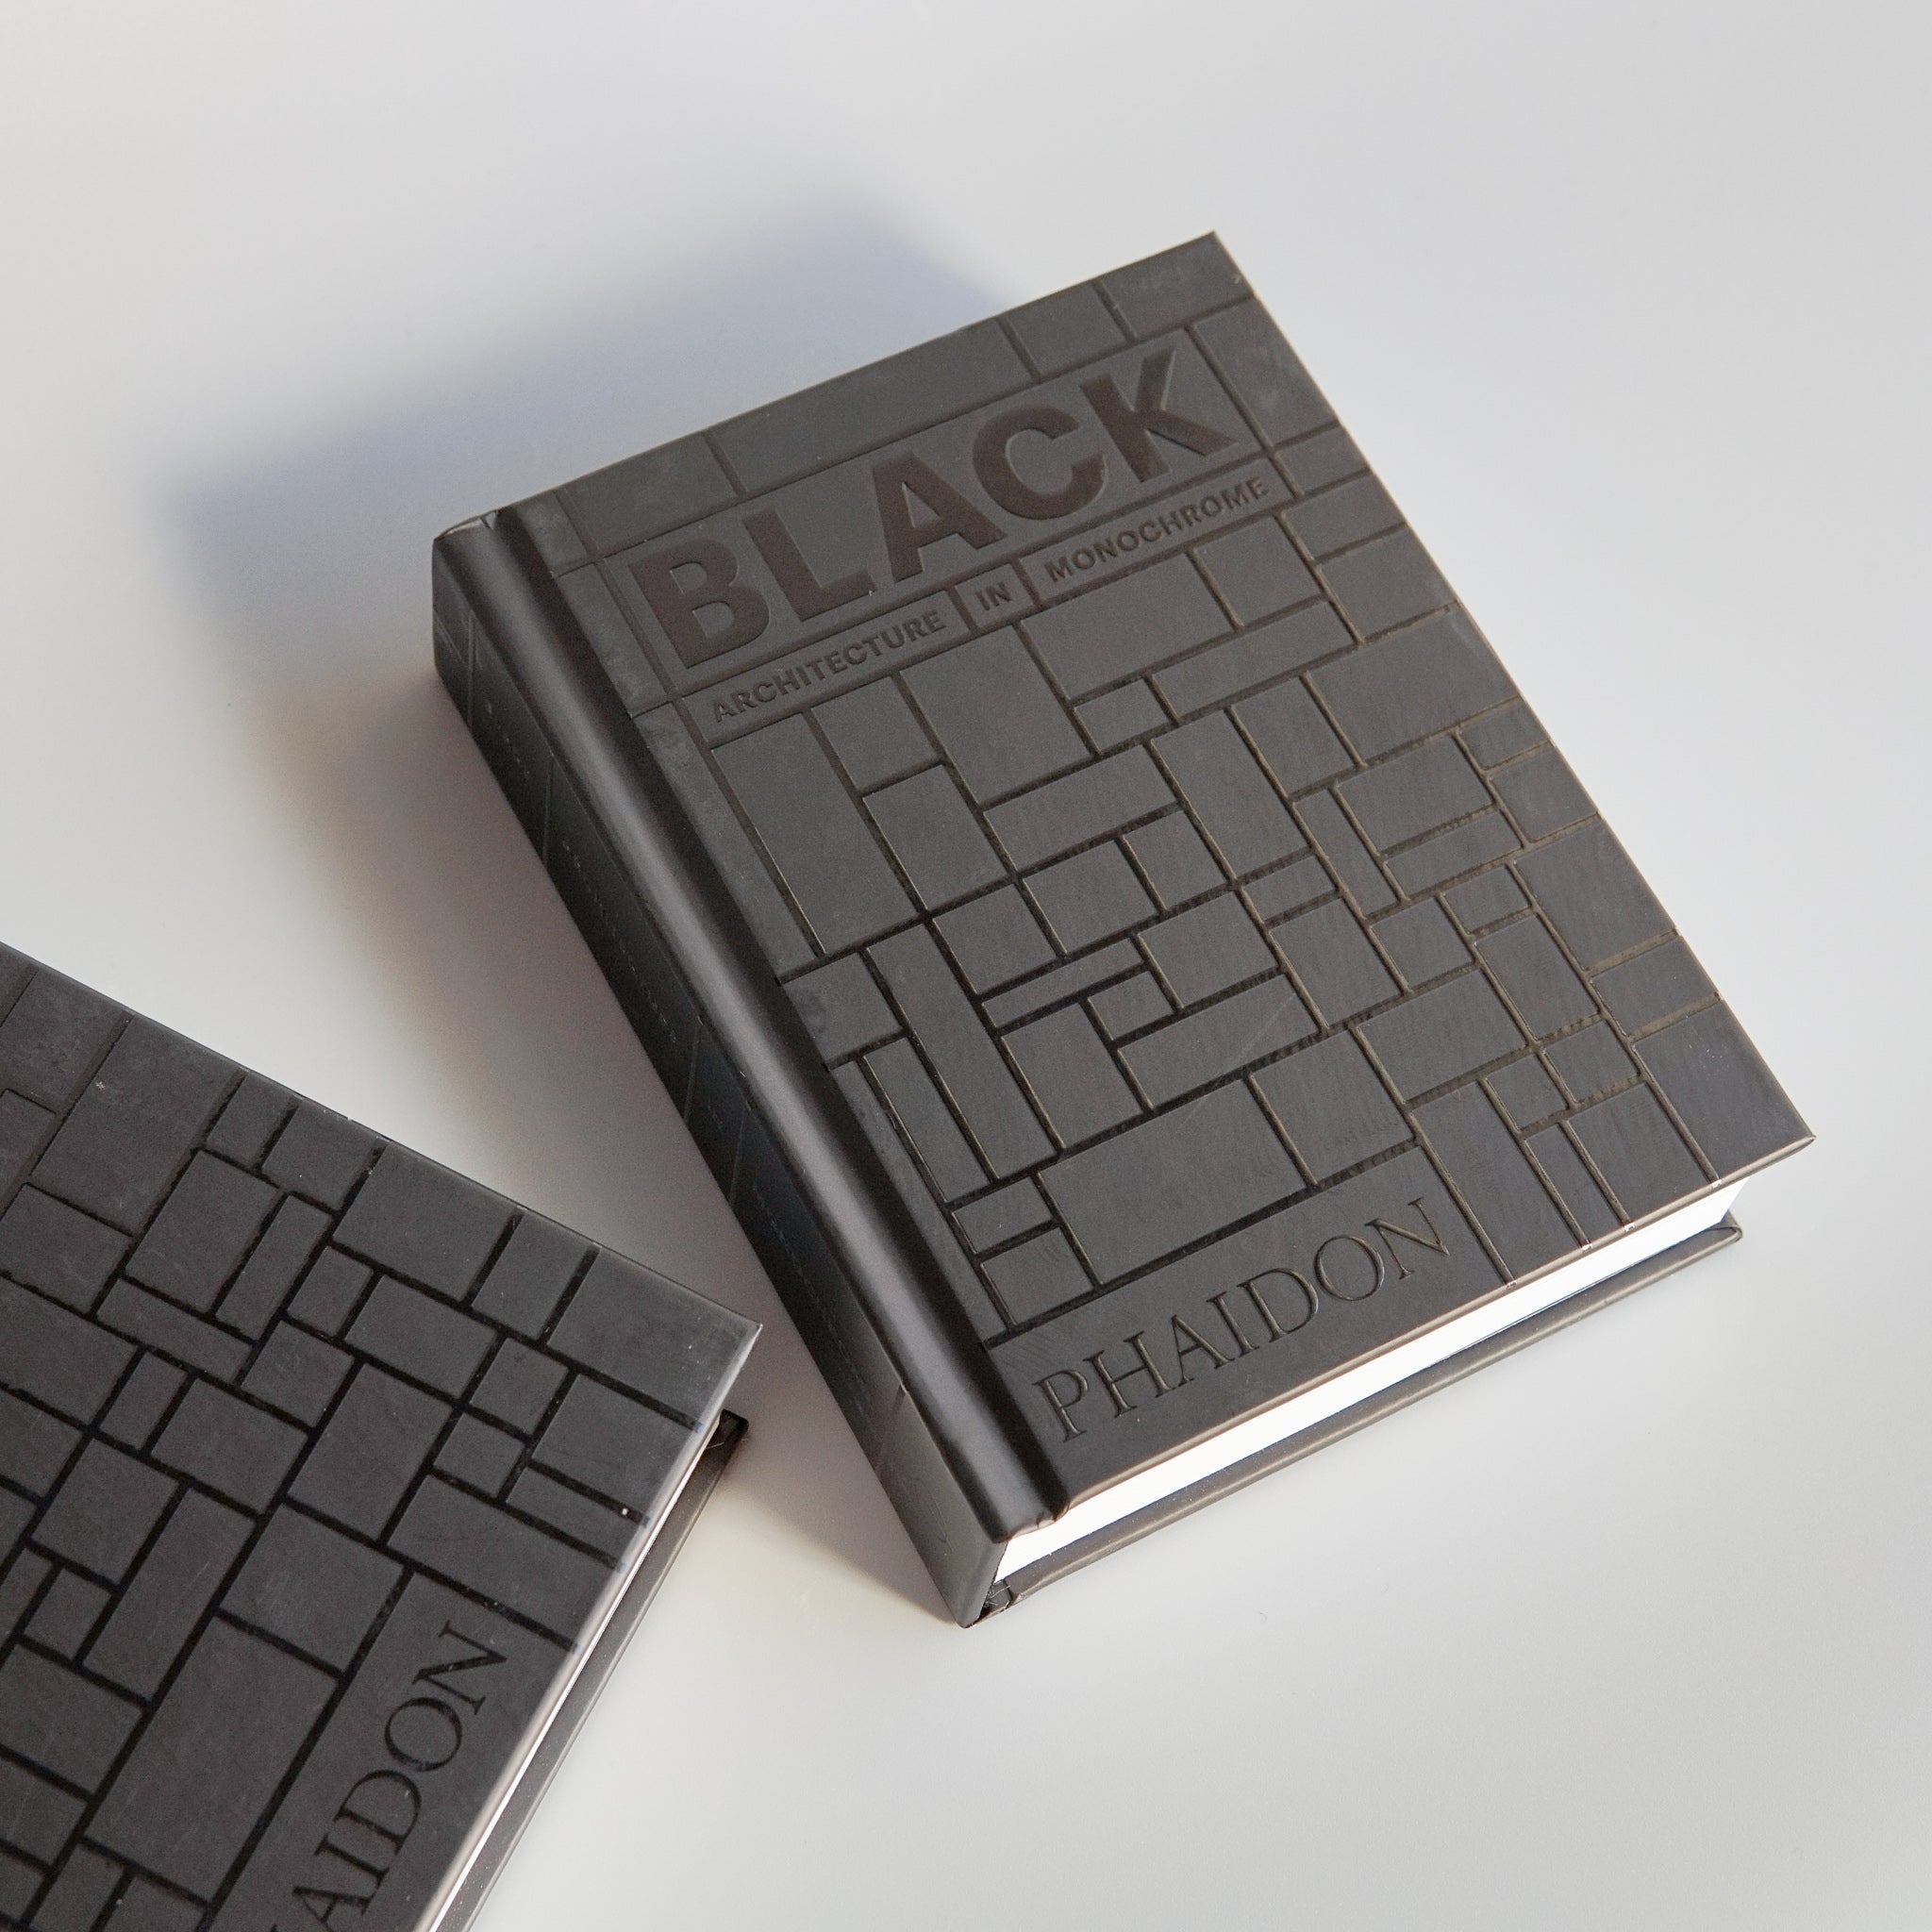 Stella Paul: Black Architecture in Monochrome